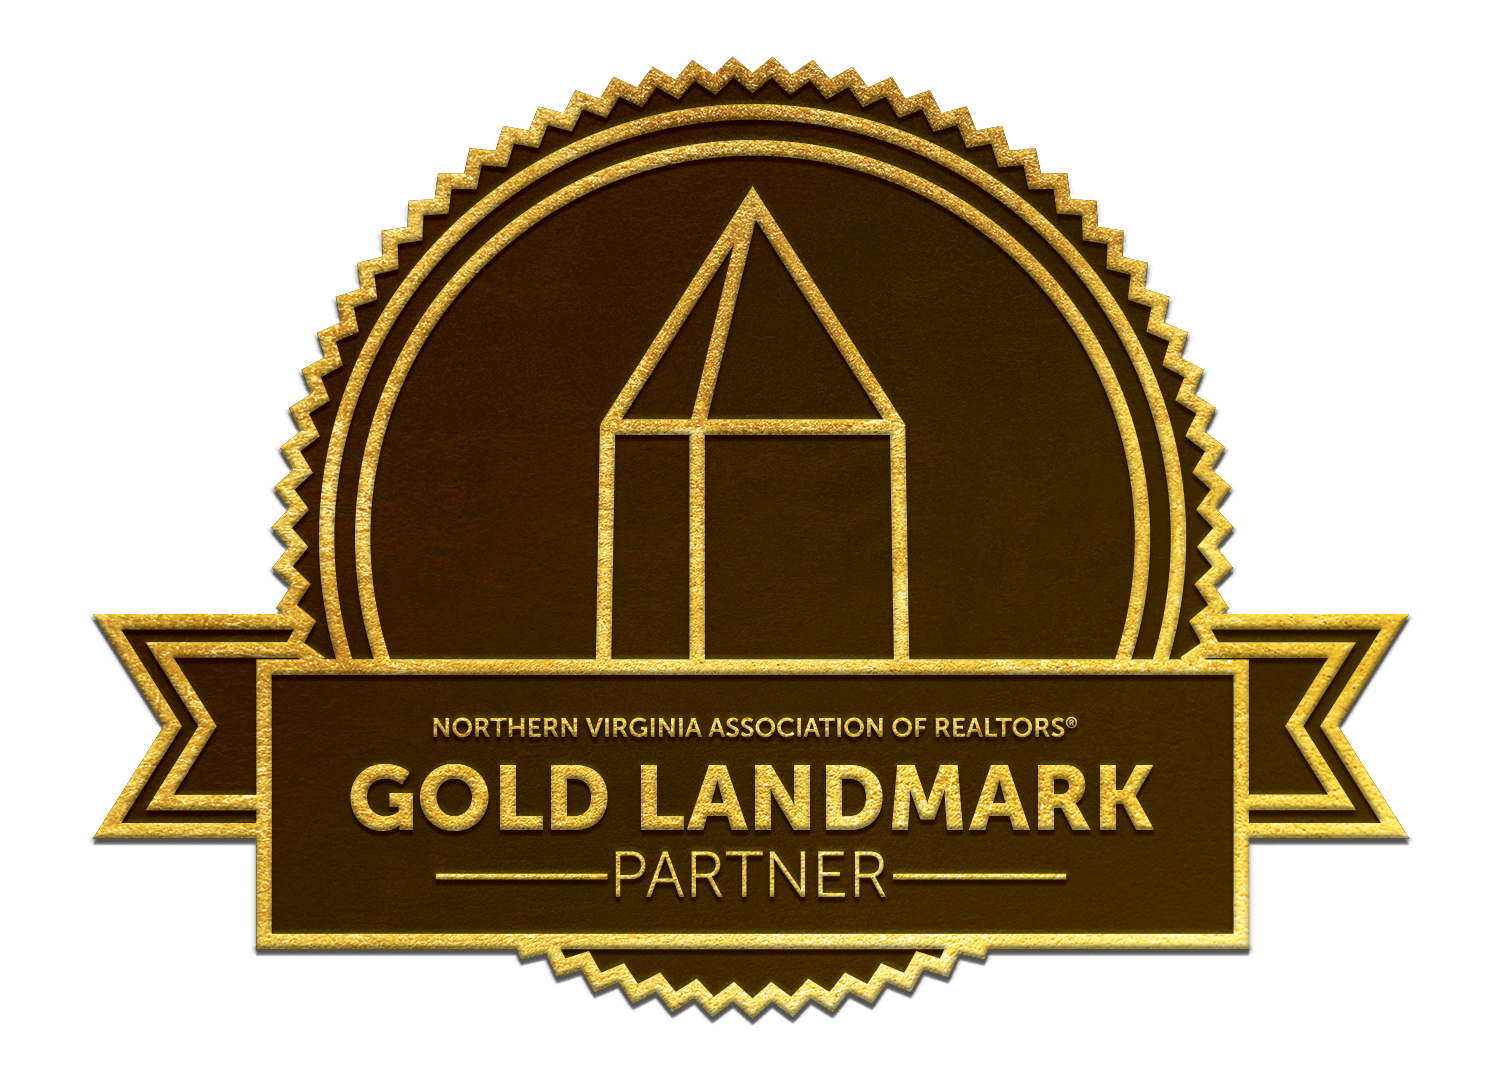 Gold landmark